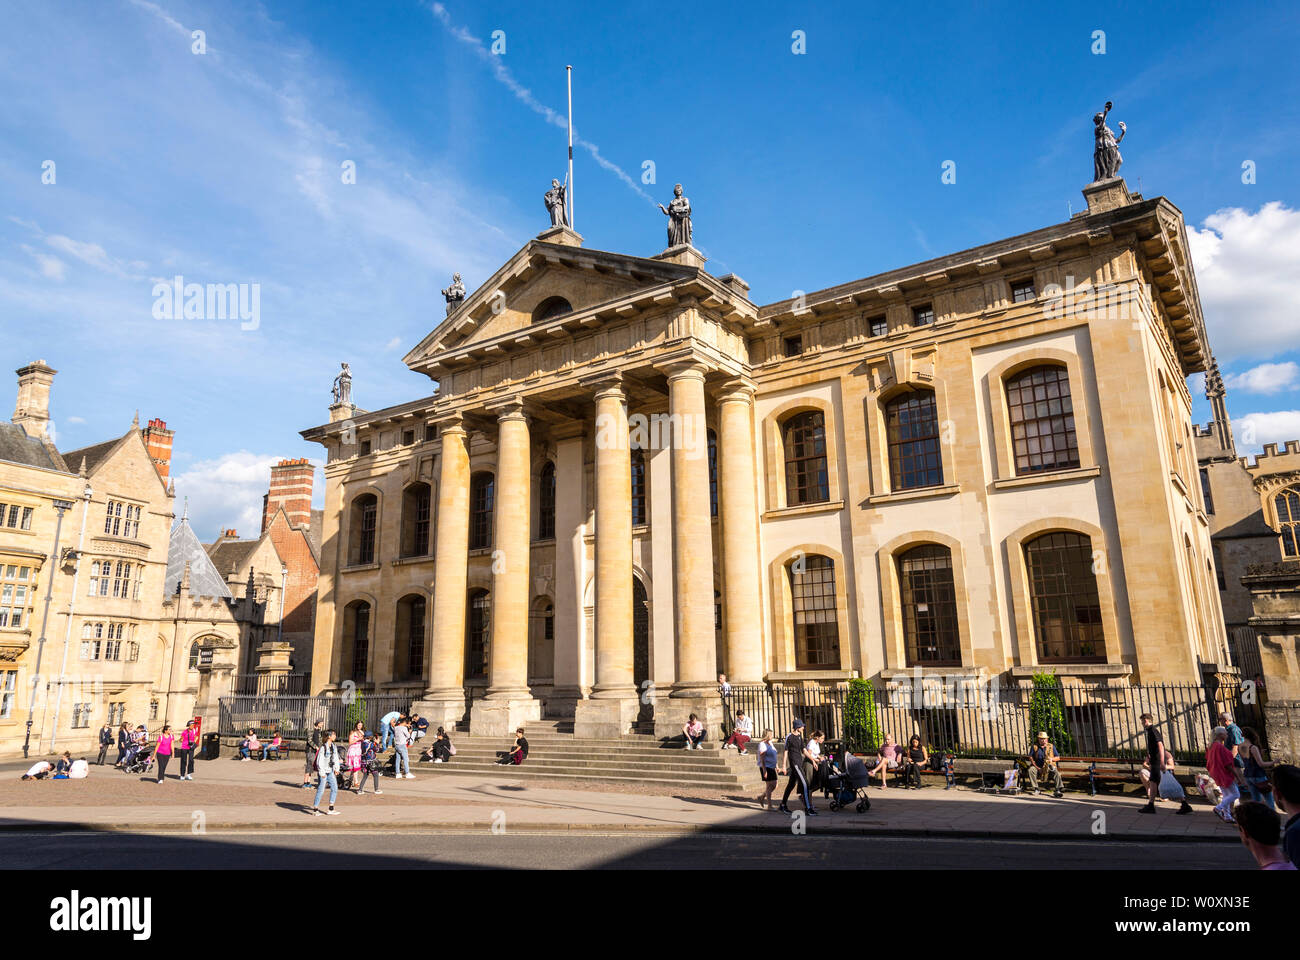 Les gens s'assoient sur les marches à l'avant du bâtiment Clarendon ensoleillée aux couleurs vives sur une belle journée d'été dans la célèbre ville universitaire d'Oxford Banque D'Images